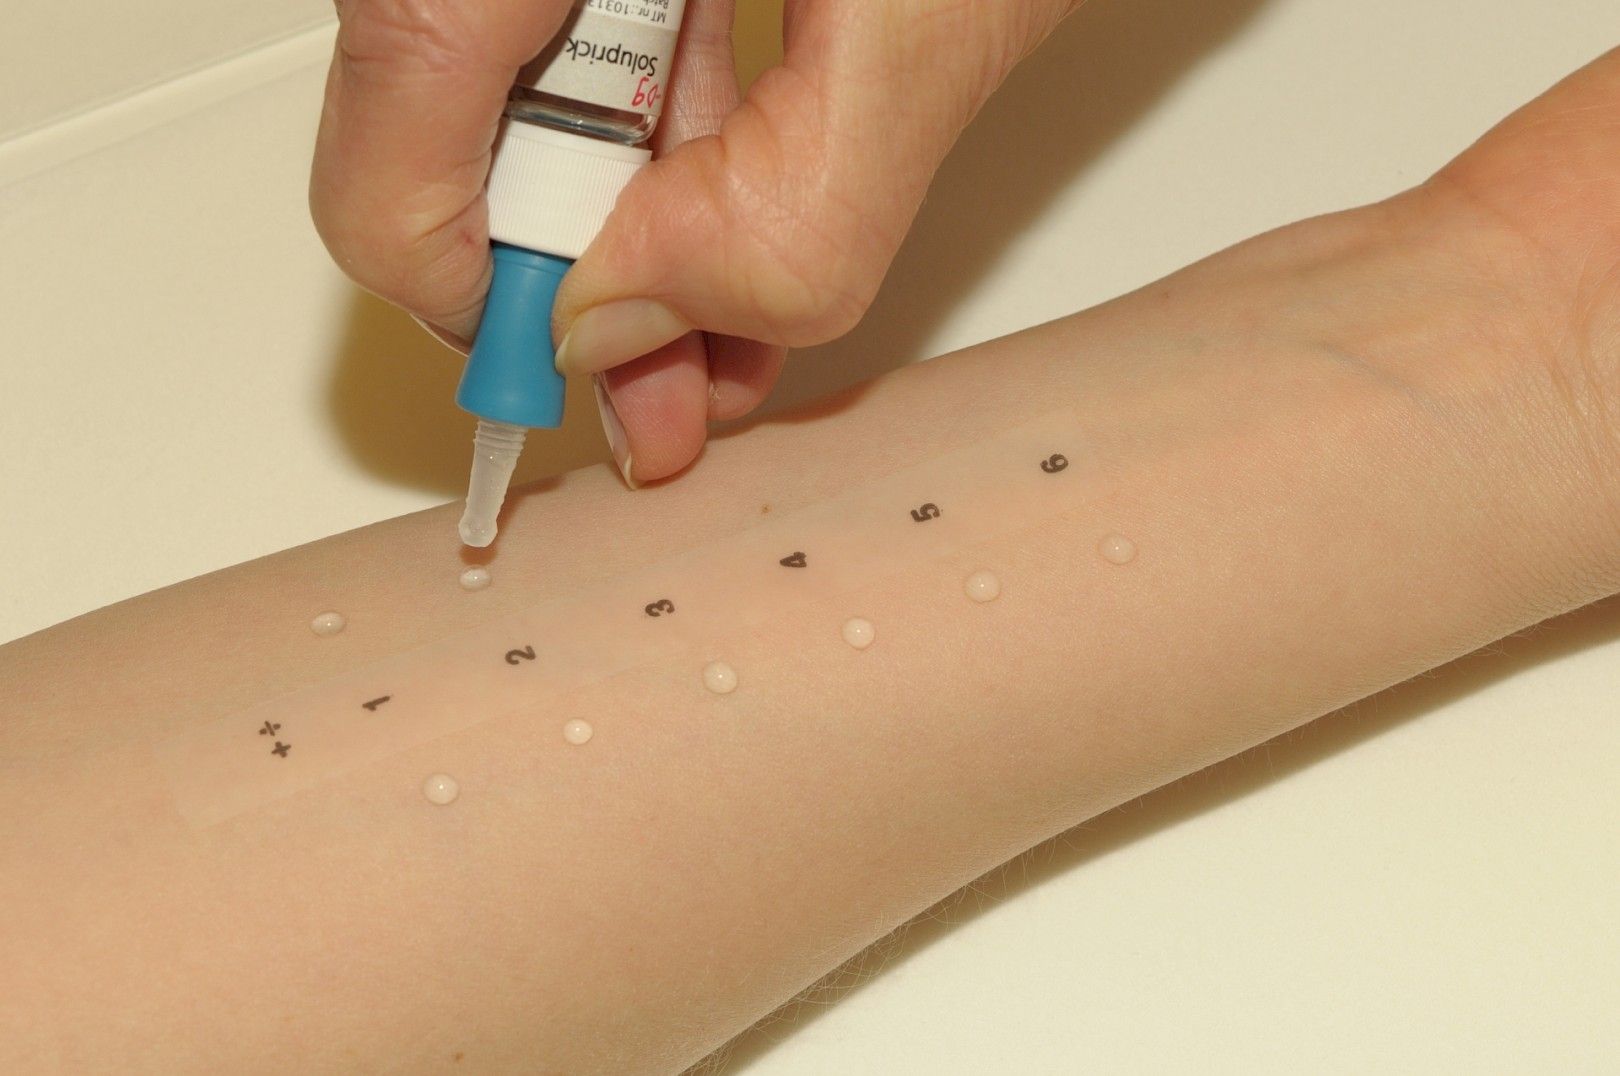 Tutustu 20+ imagen kissa allergiatesti apteekista